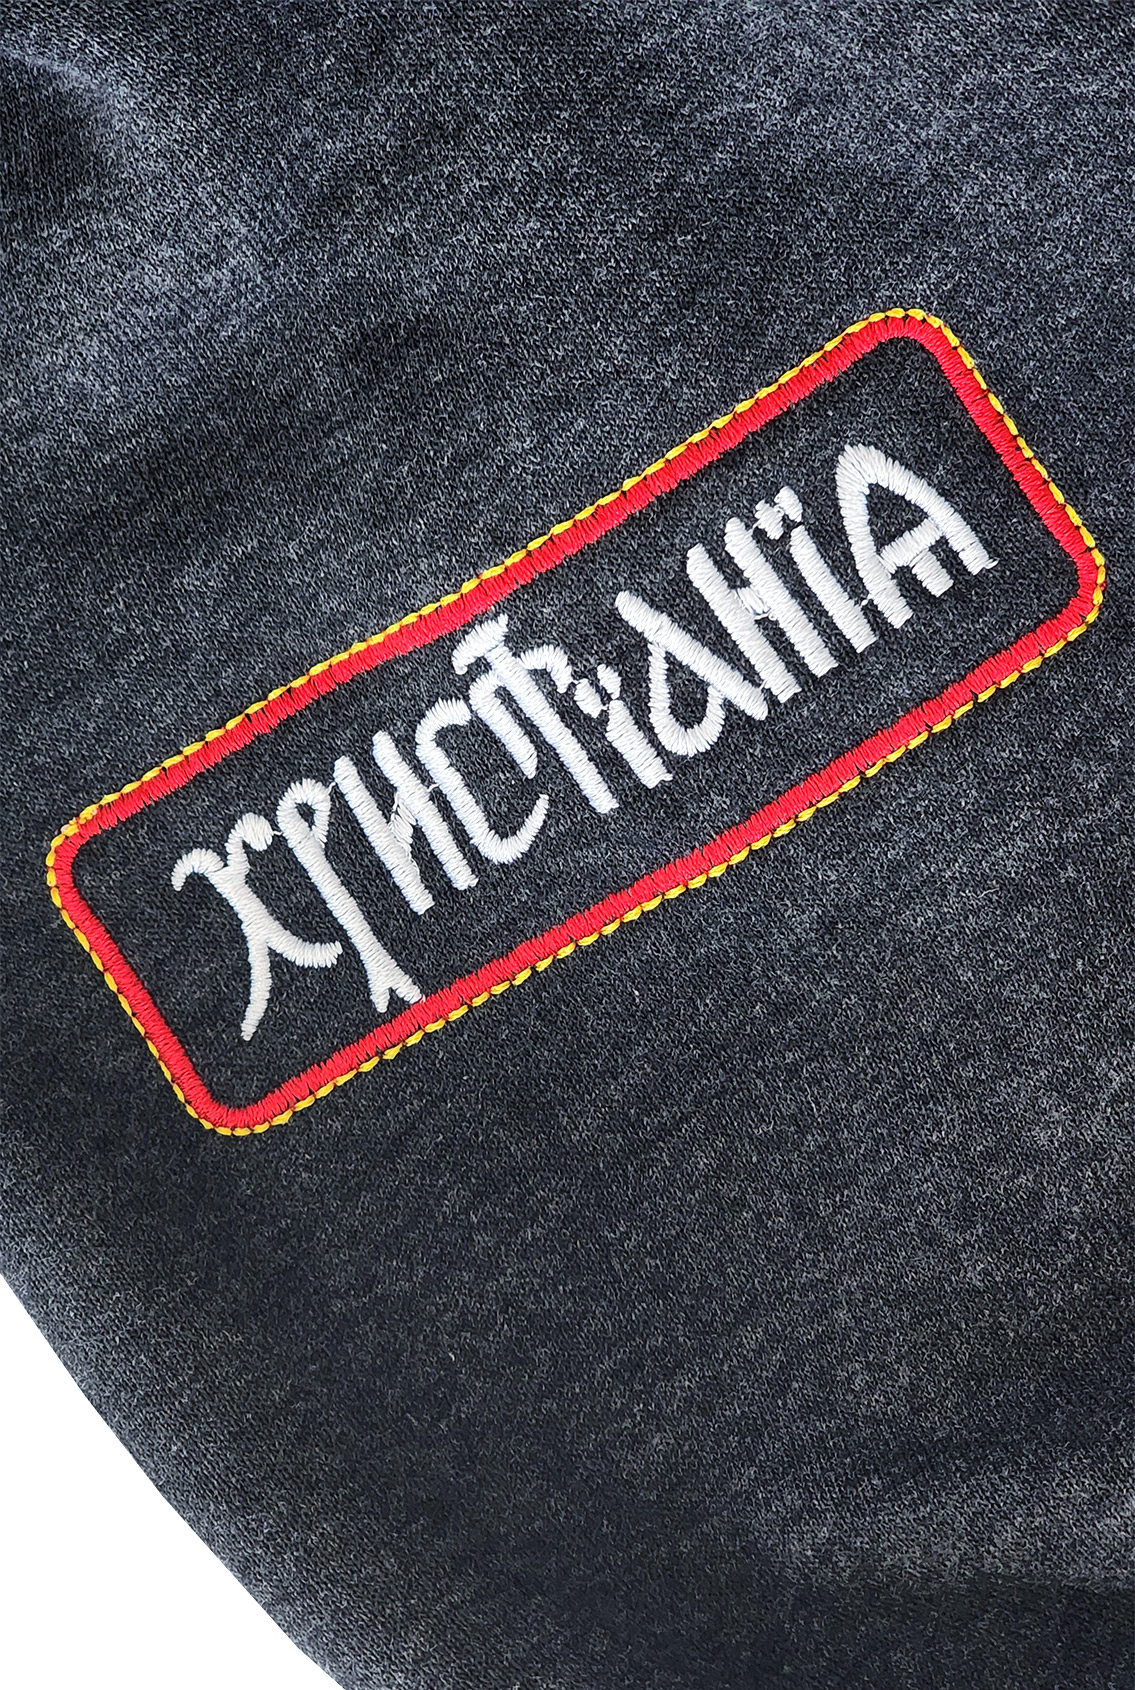 одежда с православными символами